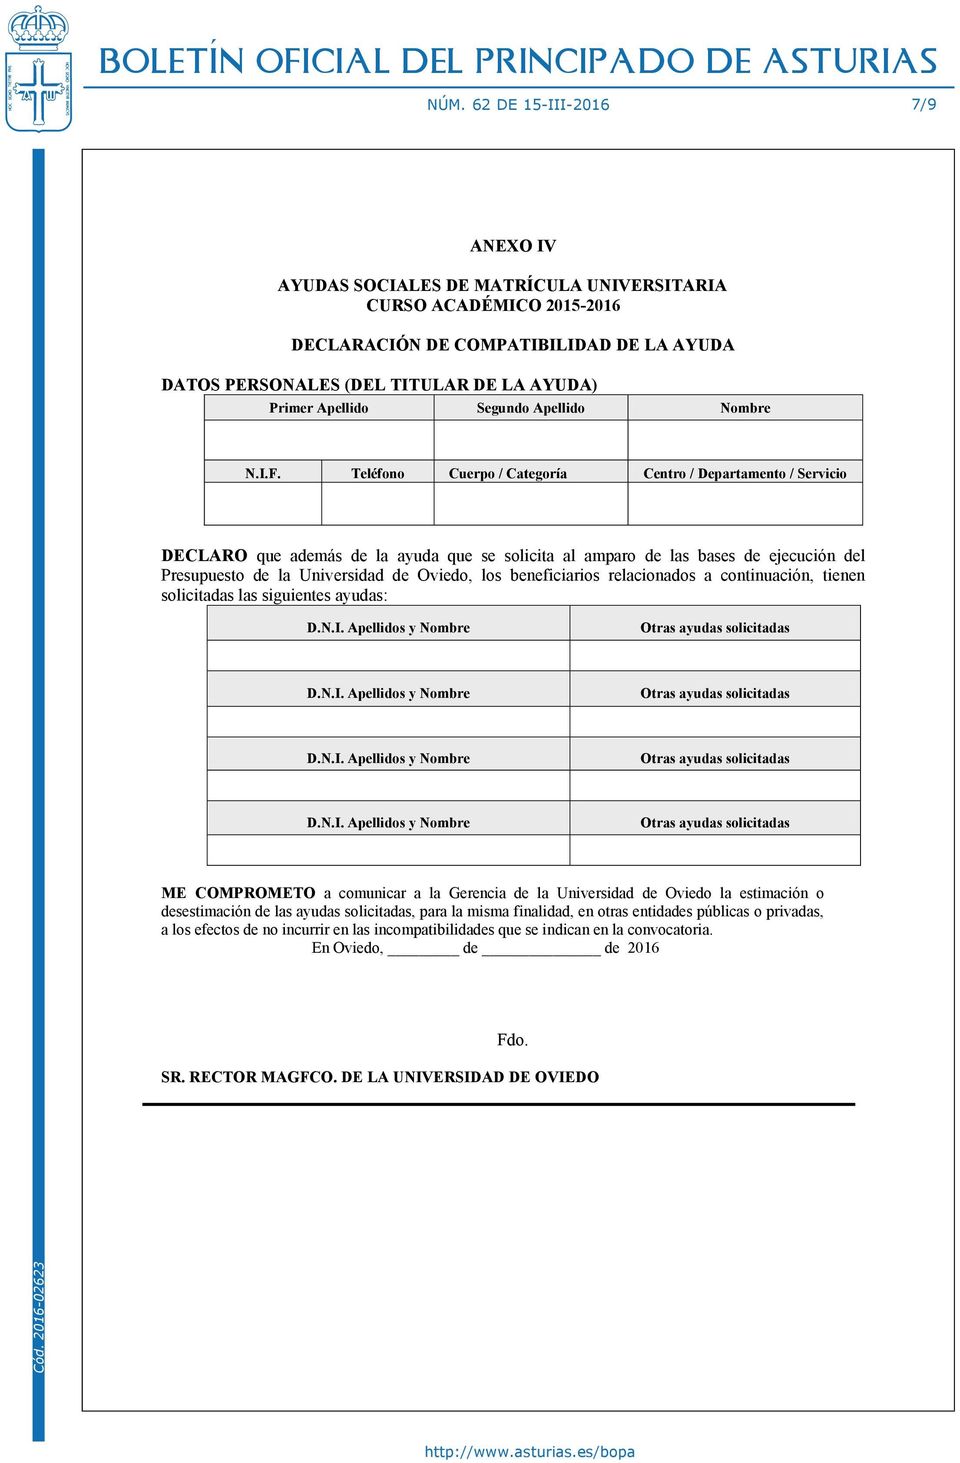 Teléfono Cuerpo / Categoría Centro / Departamento / Servicio DECLARO que además de la ayuda que se solicita al amparo de las bases de ejecución del Presupuesto de la Universidad de Oviedo, los